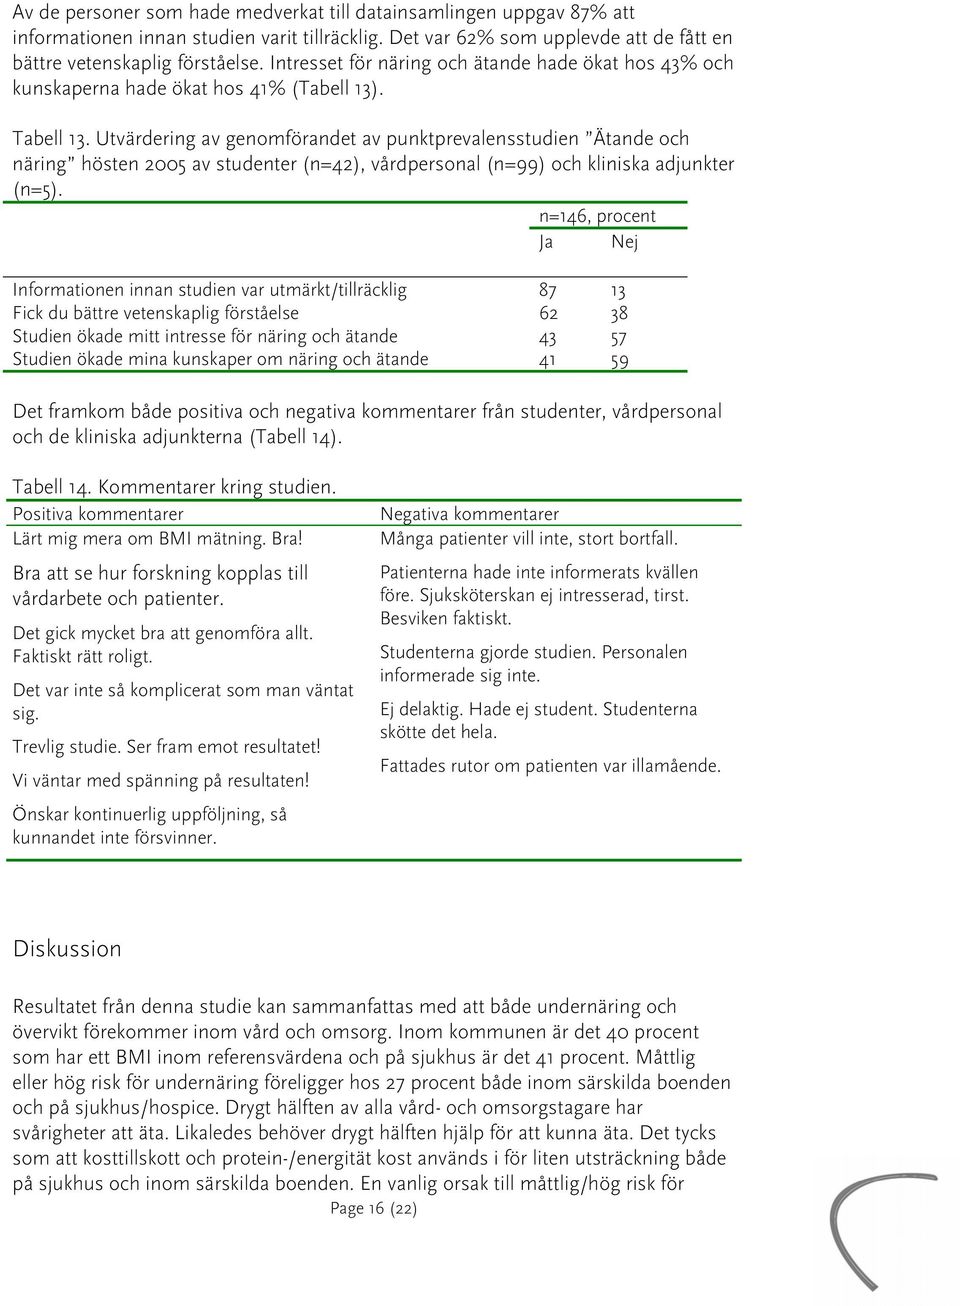 Utvärdering av genomförandet av punktprevalensstudien Ätande och näring hösten 2005 av studenter (n=42), vårdpersonal (n=99) och kliniska adjunkter (n=5).